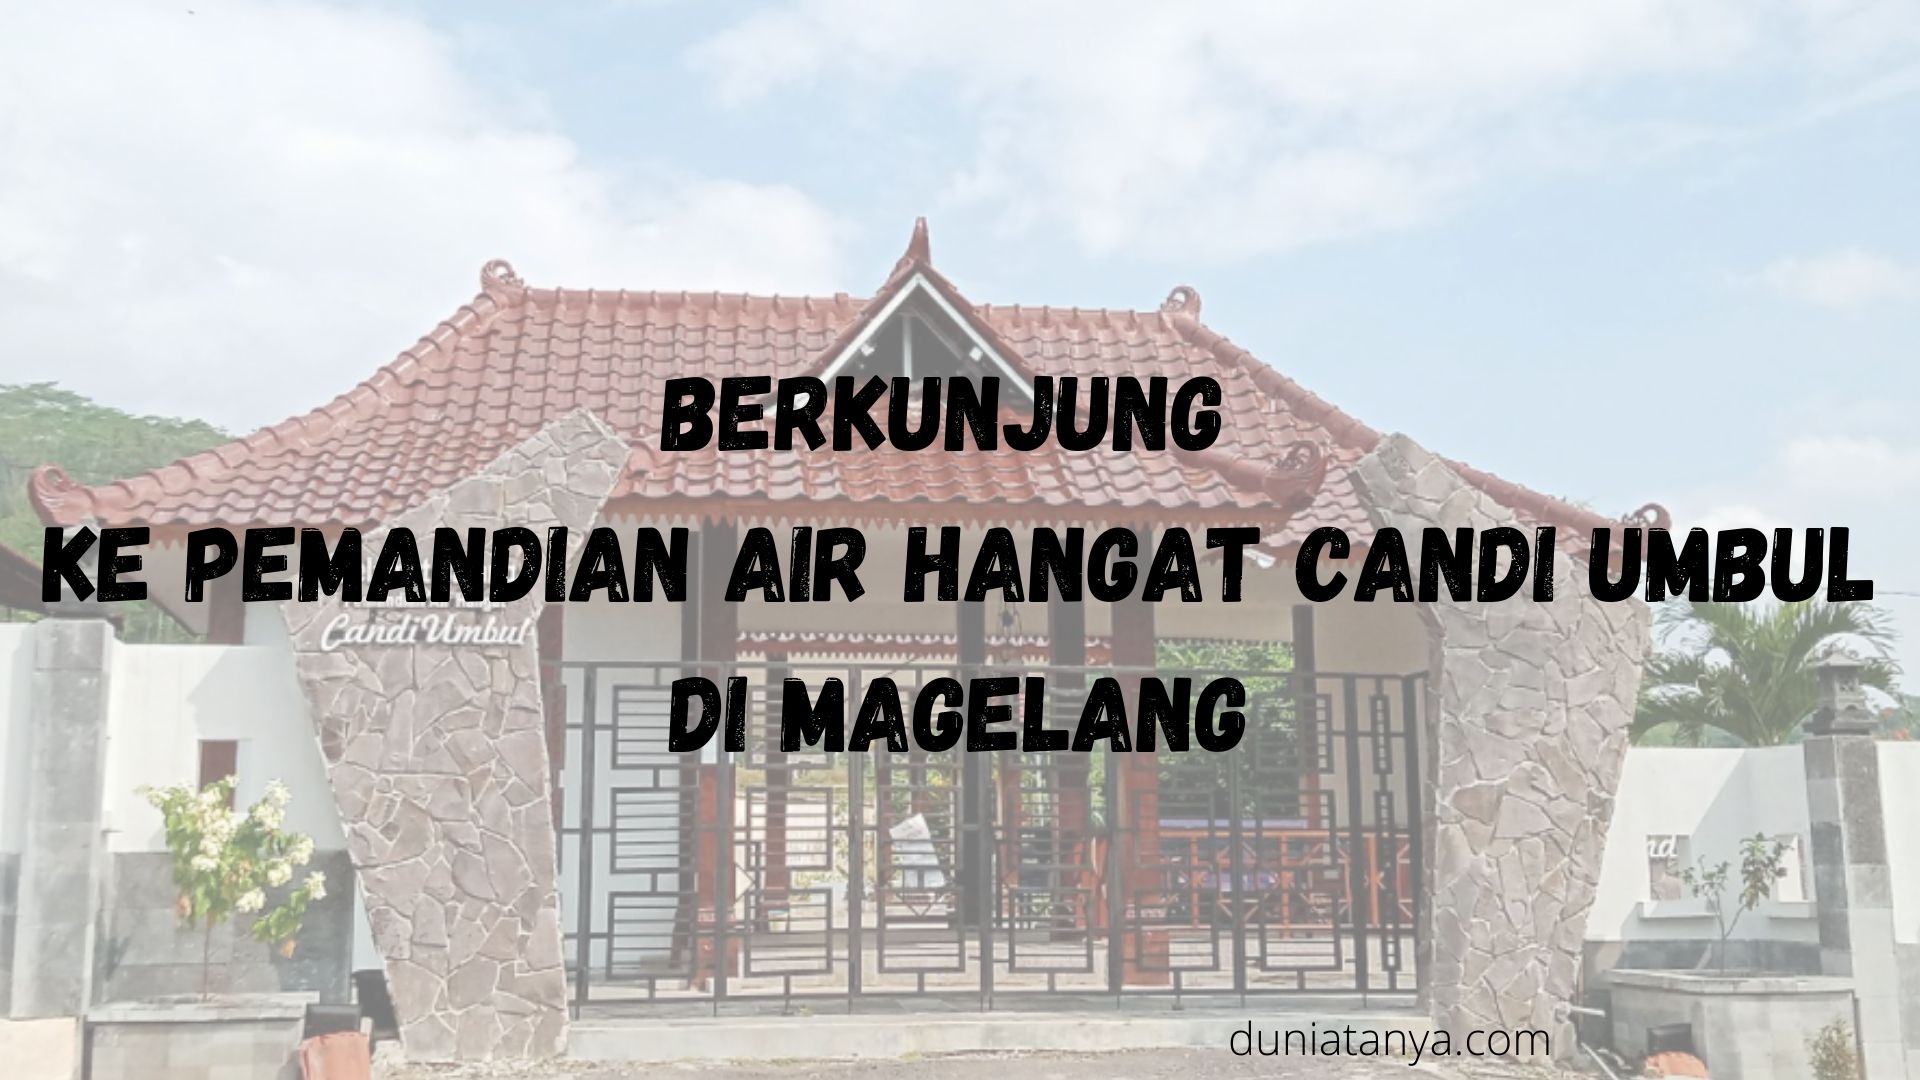 You are currently viewing Berkunjung Ke Pemandian Air Hangat Candi Umbul Di Magelang